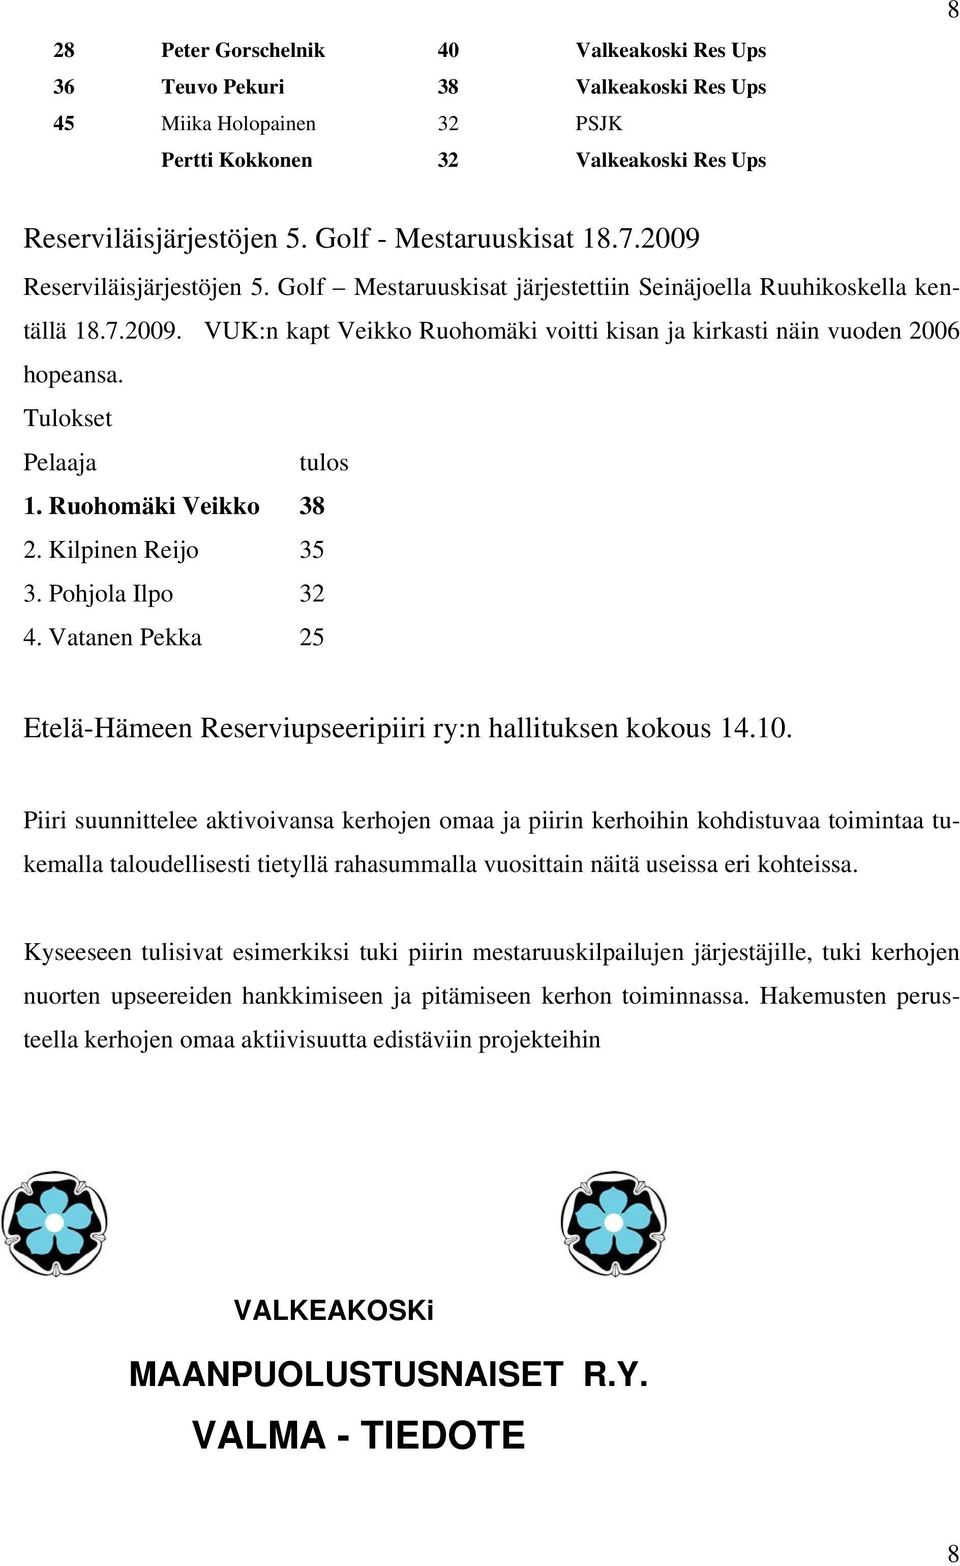 Tulokset Pelaaja tulos 1. Ruohomäki Veikko 38 2. Kilpinen Reijo 35 3. Pohjola Ilpo 32 4. Vatanen Pekka 25 Etelä-Hämeen Reserviupseeripiiri ry:n hallituksen kokous 14.10.